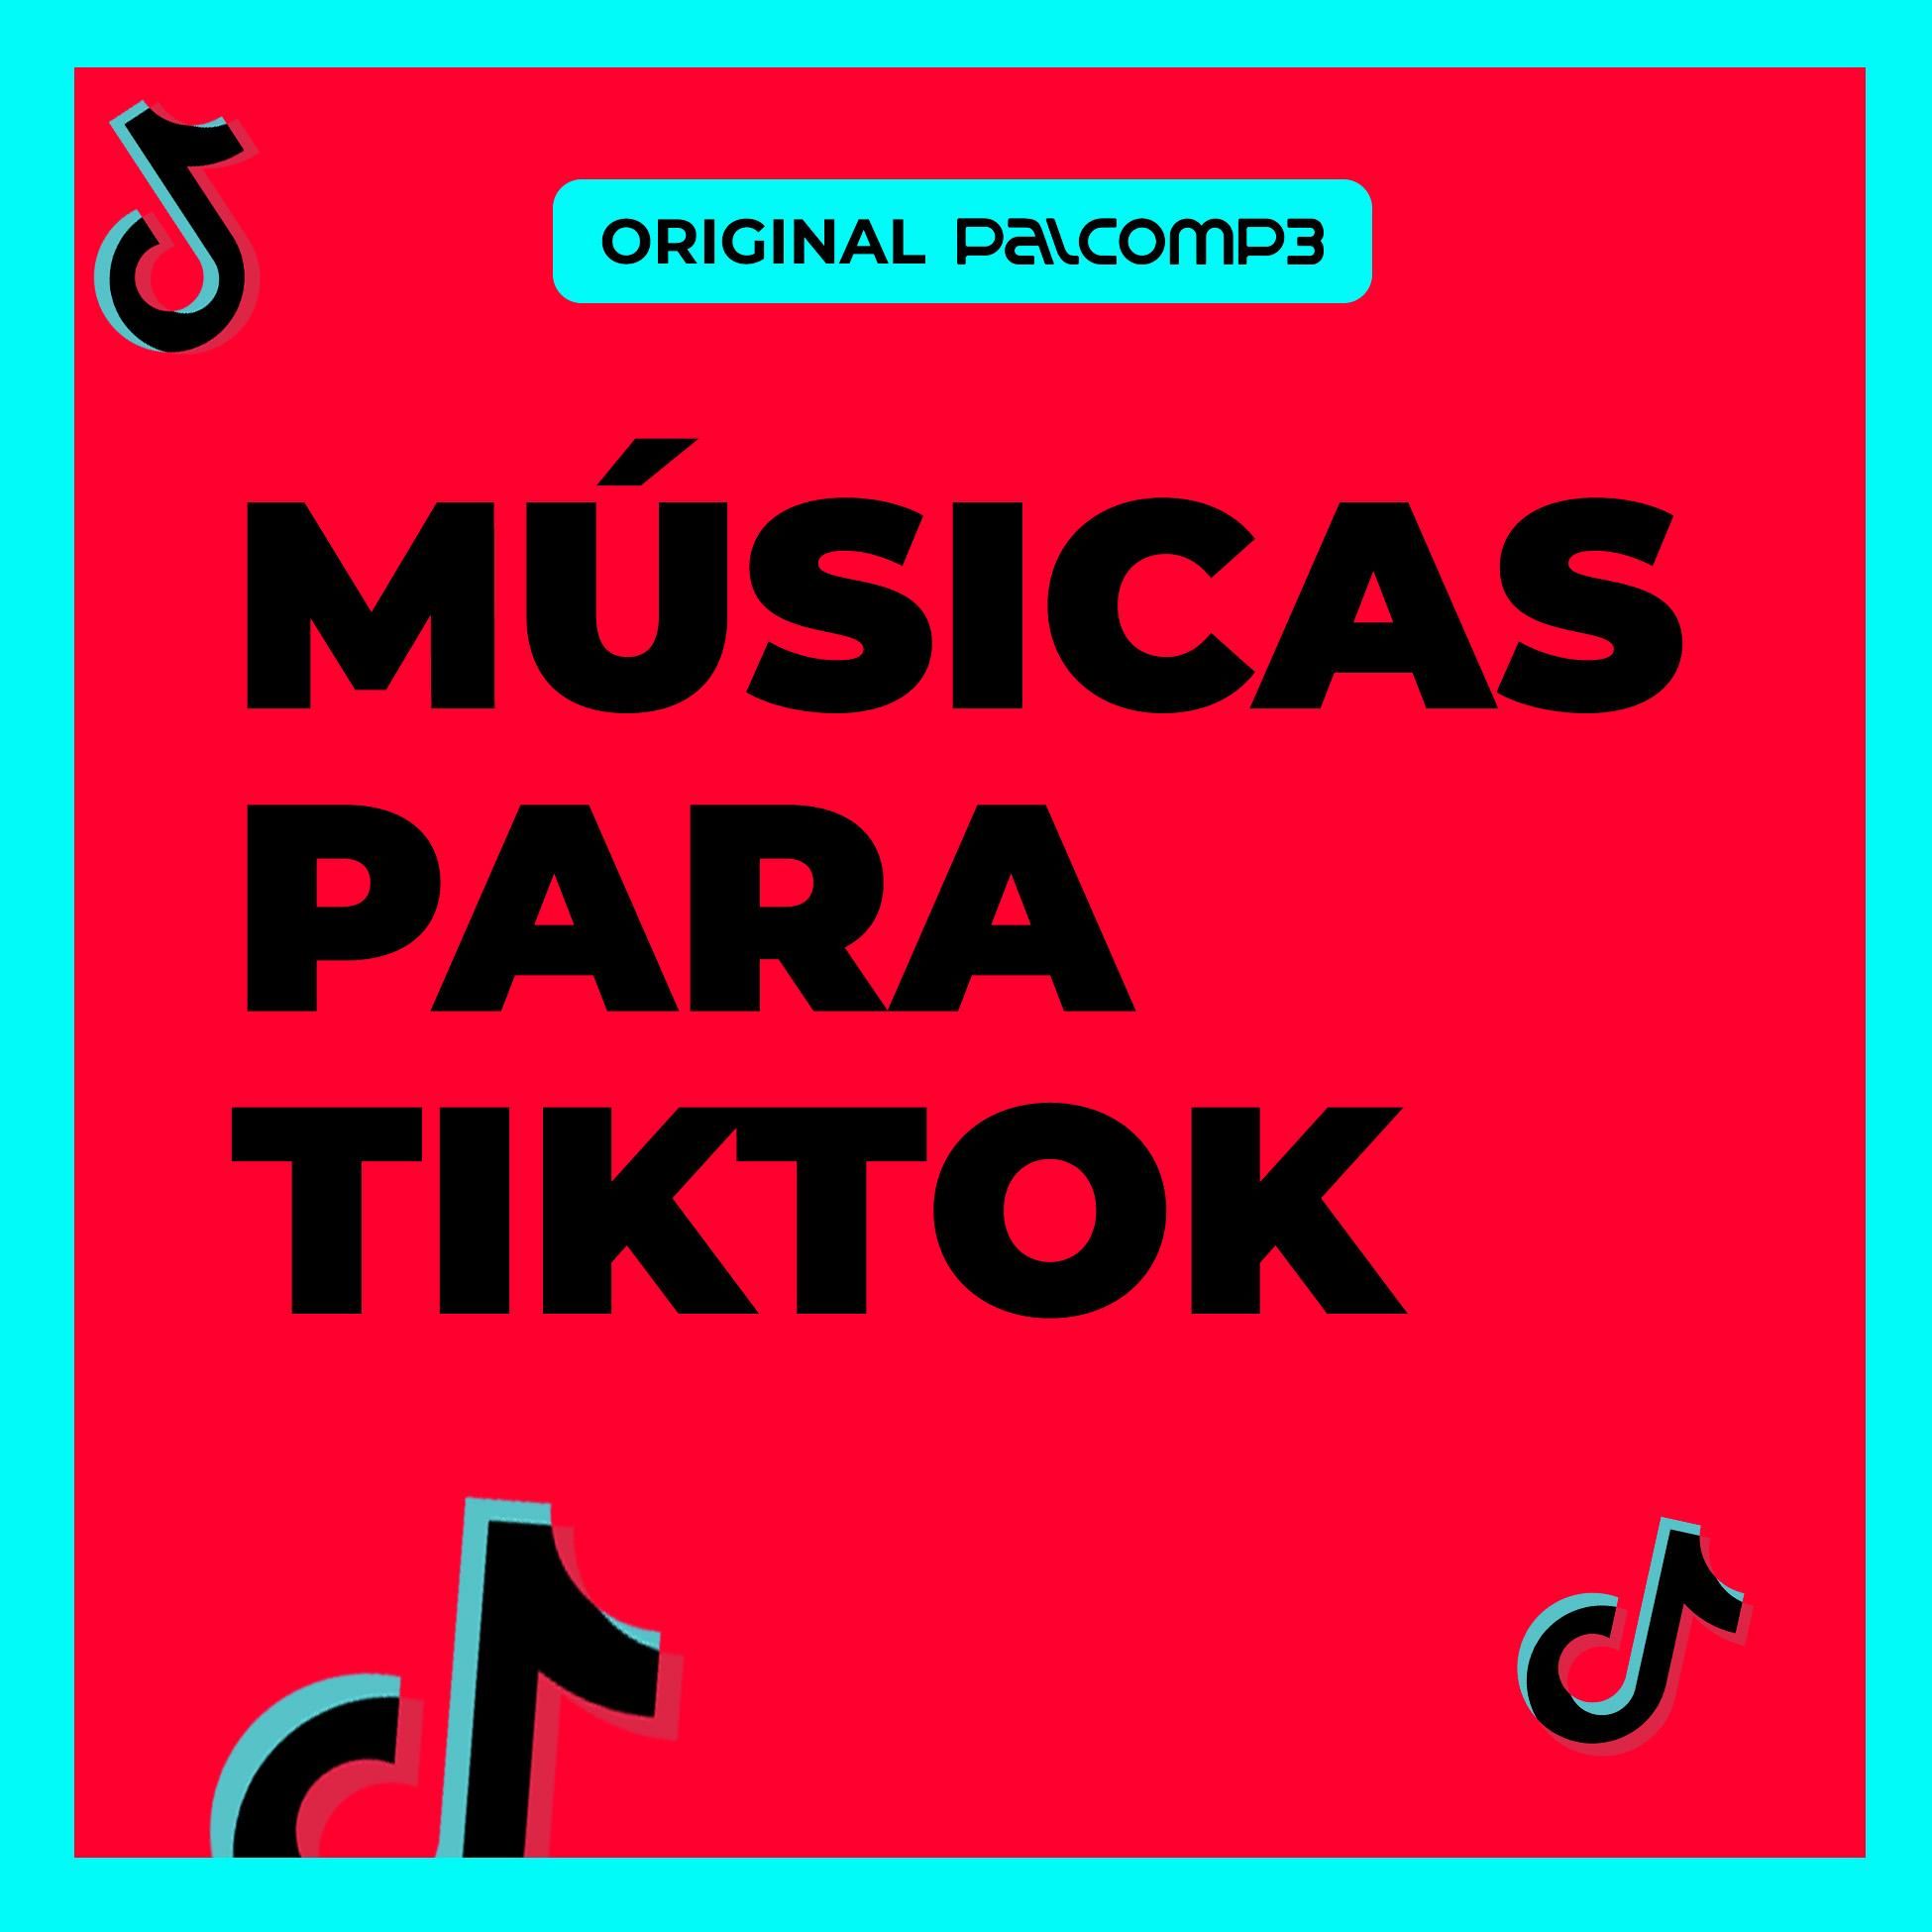 Dance Se Souber no Passinho do Tiktok – música e letra de GRUPO DE